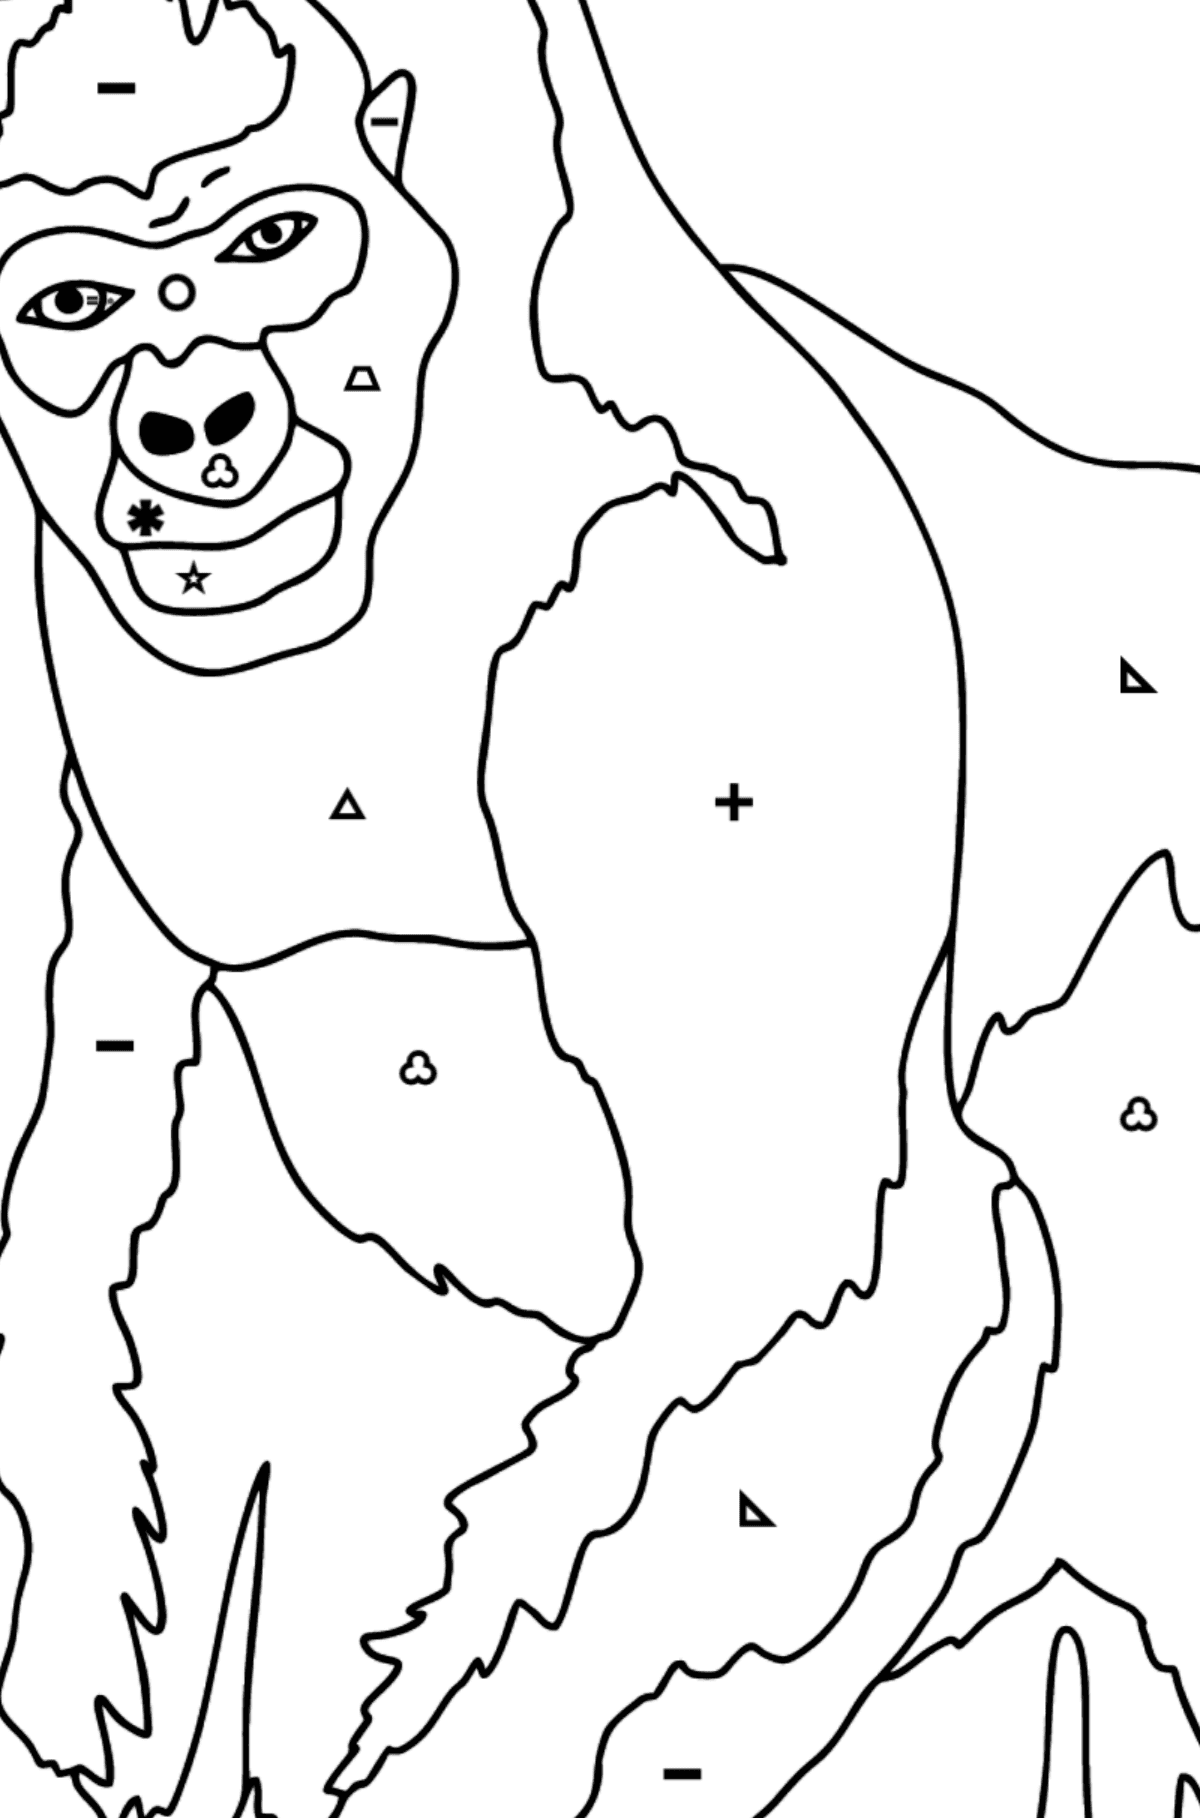 Tegning til farvning gorilla (vanskeligt) - farvelægning side efter symboler og geometriske former for børn